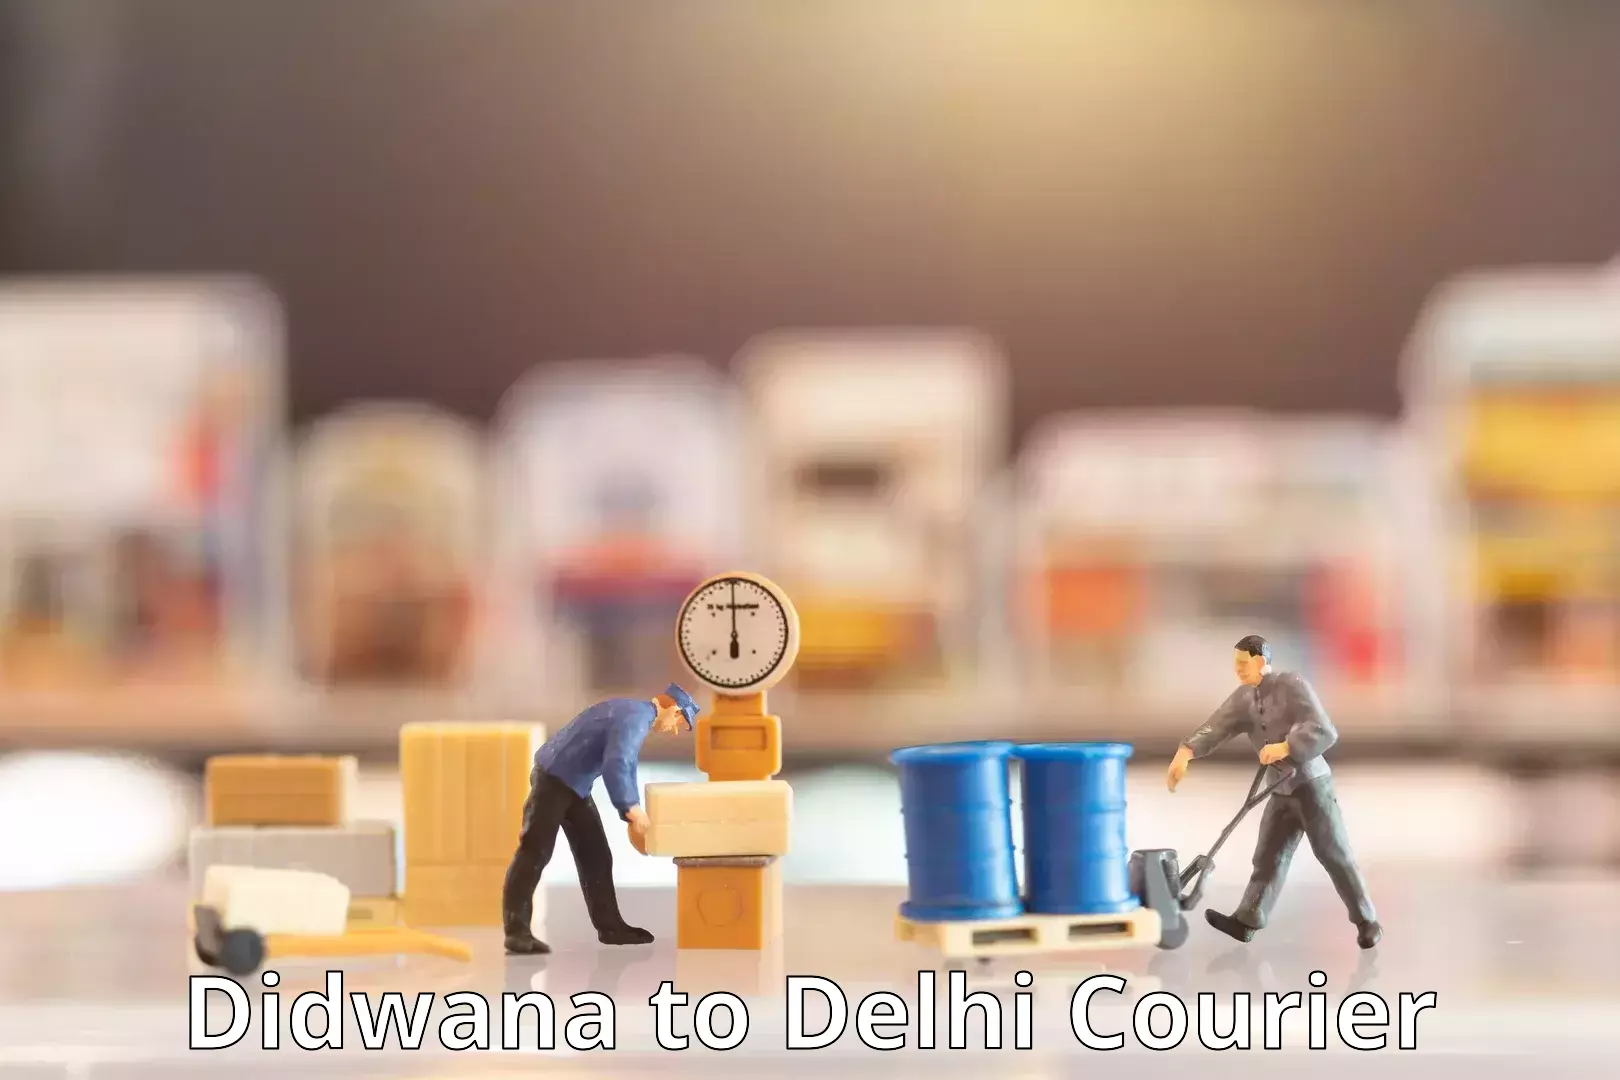 User-friendly delivery service Didwana to Jamia Millia Islamia New Delhi